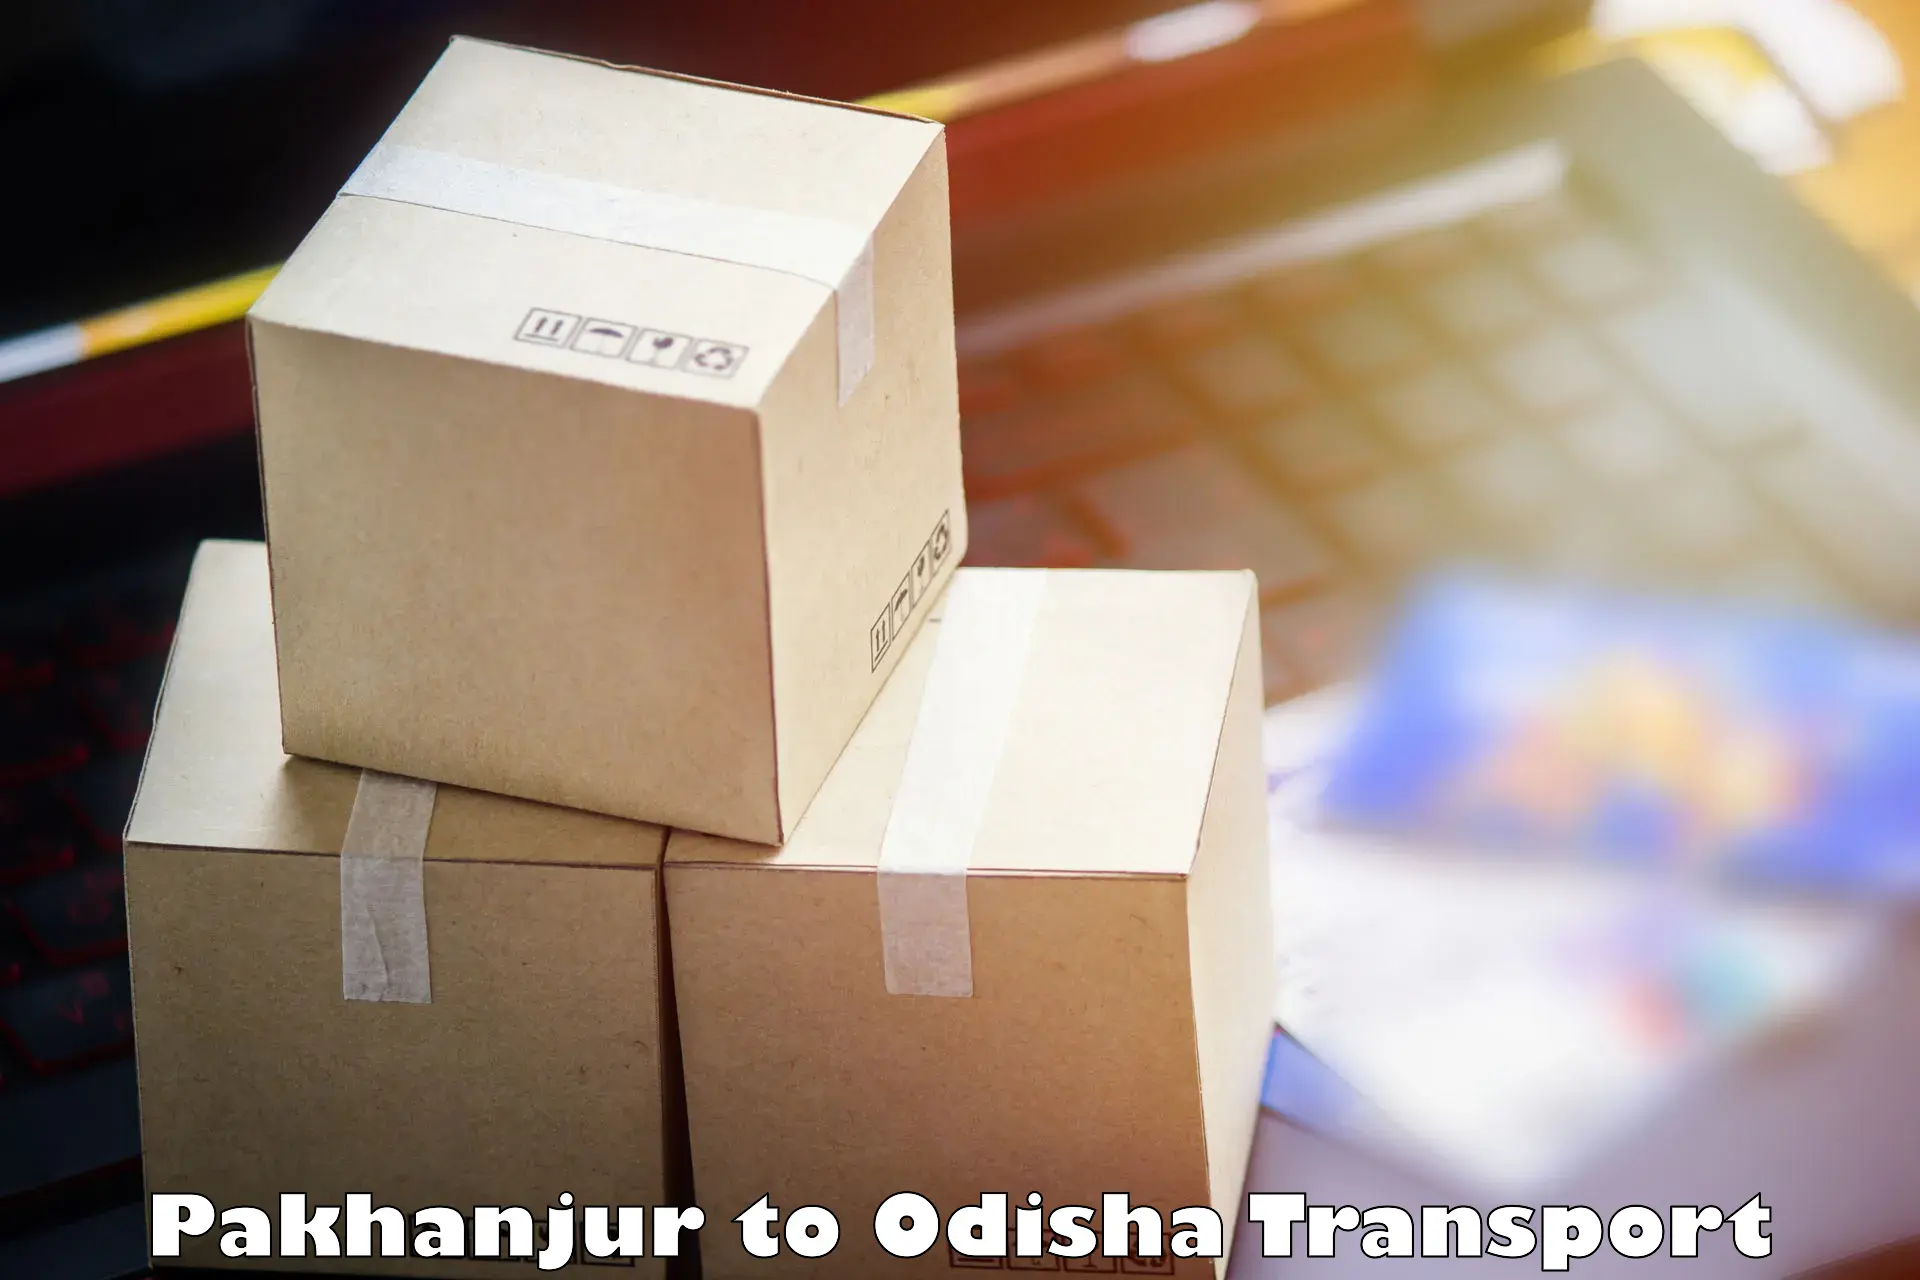 Material transport services Pakhanjur to Nirakarpur